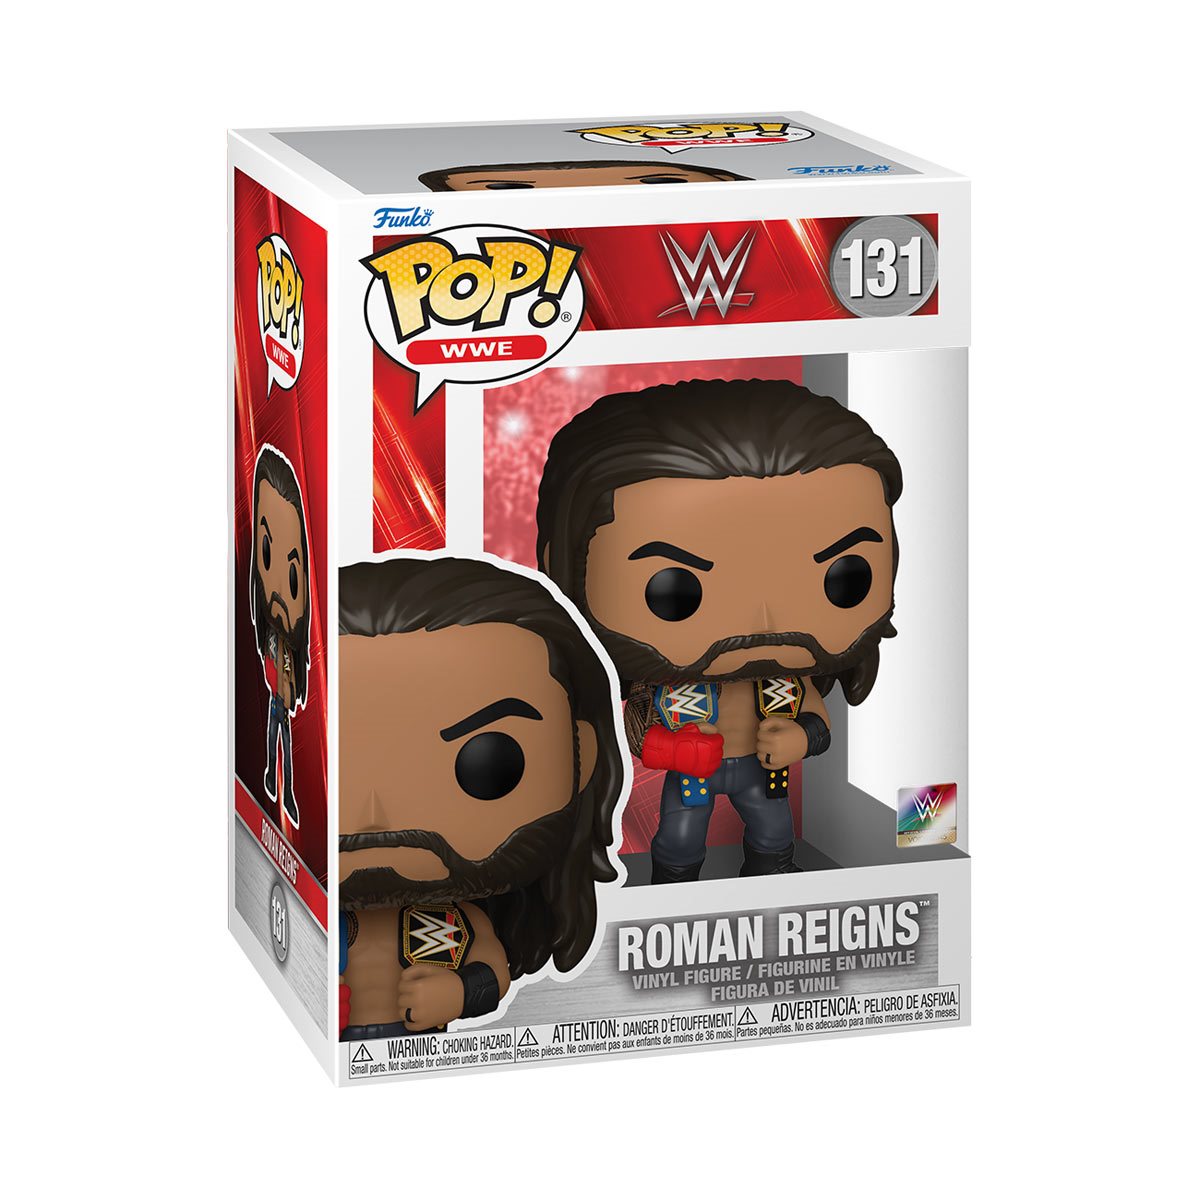 WWE Roman Reigns with Belts Funko Pop! Vinyl Figure 131